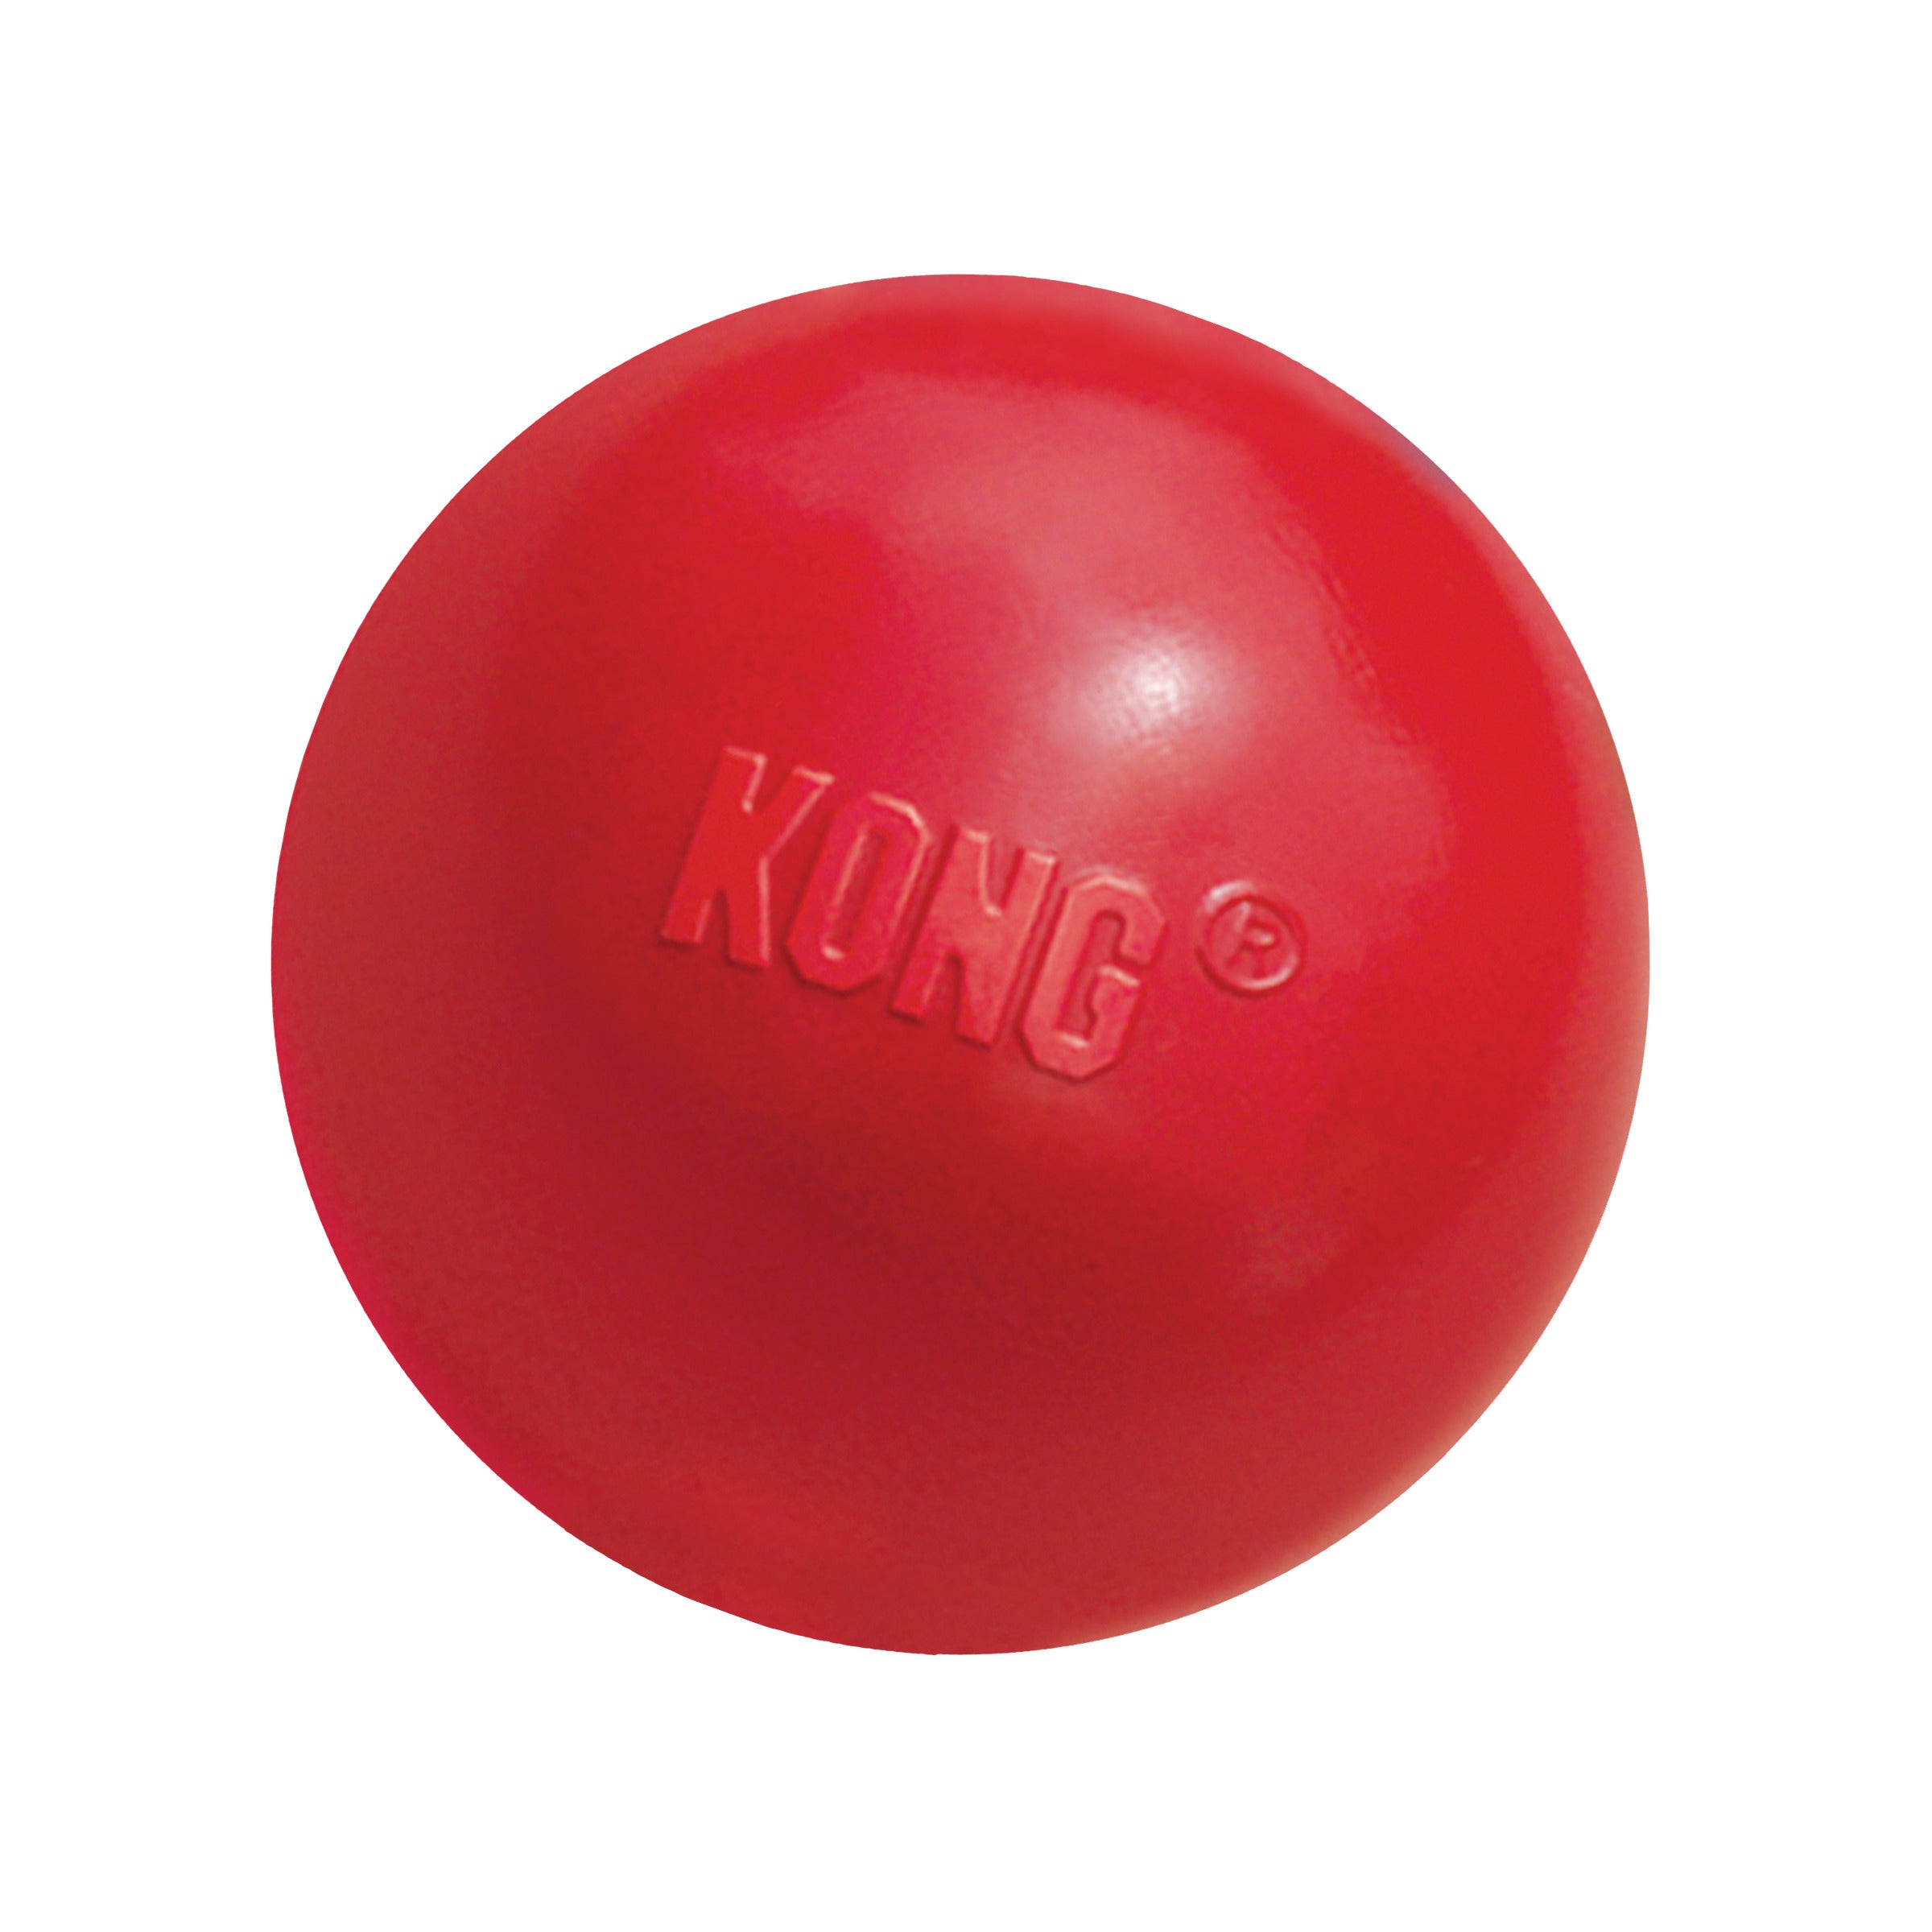 Kong Ball - Pelota Kong Clásica con Agujero